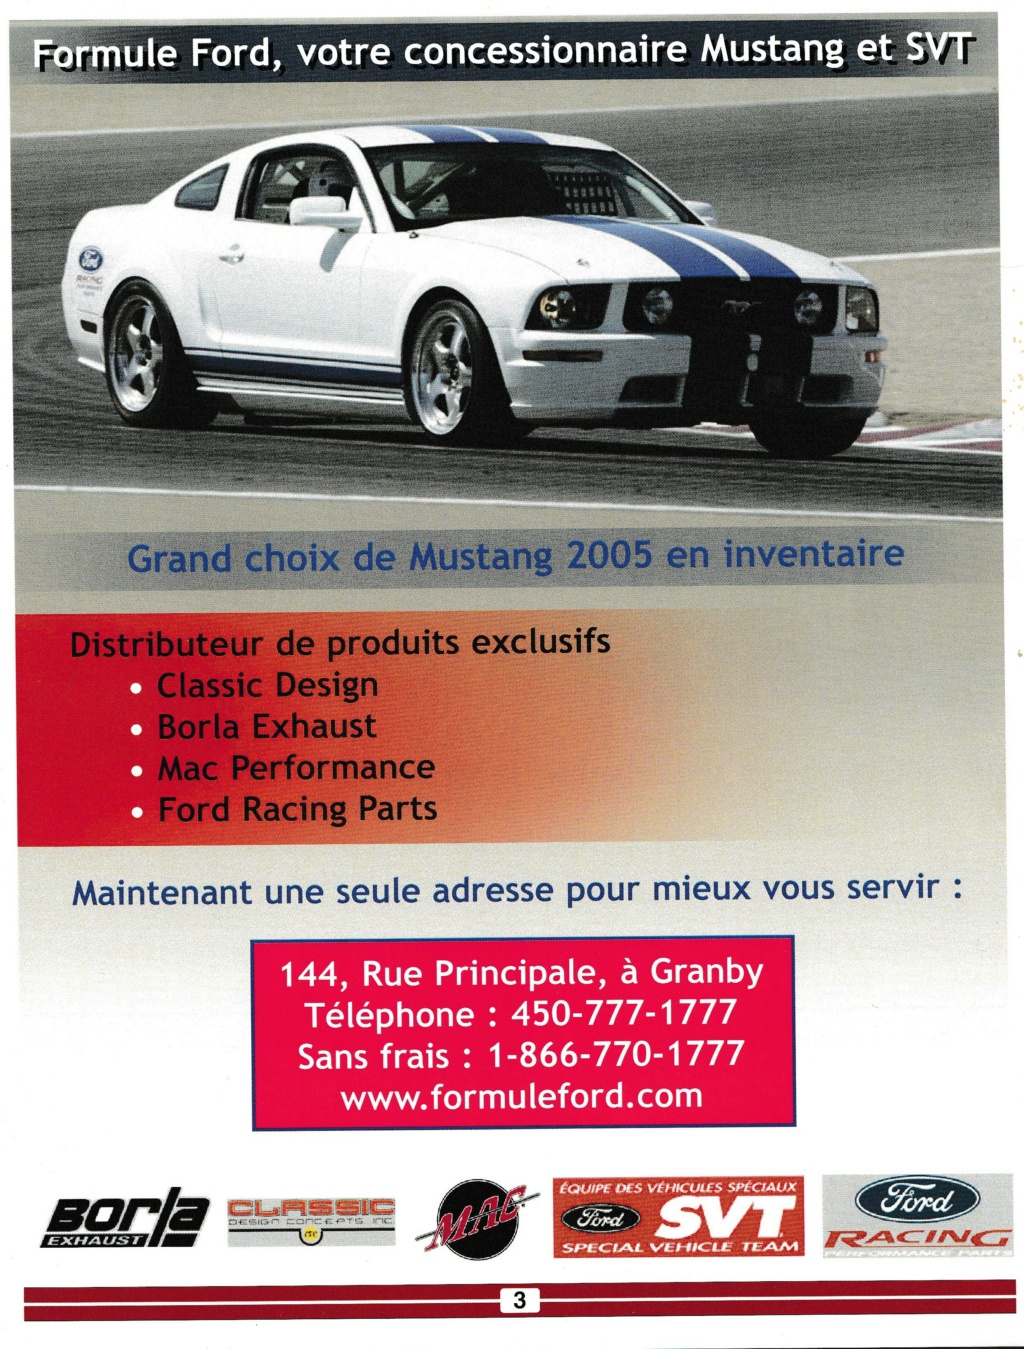 ford - Montréal Mustang: 40 ans et + d’activités! (Photos-Vidéos,etc...) - Page 18 Img_2578